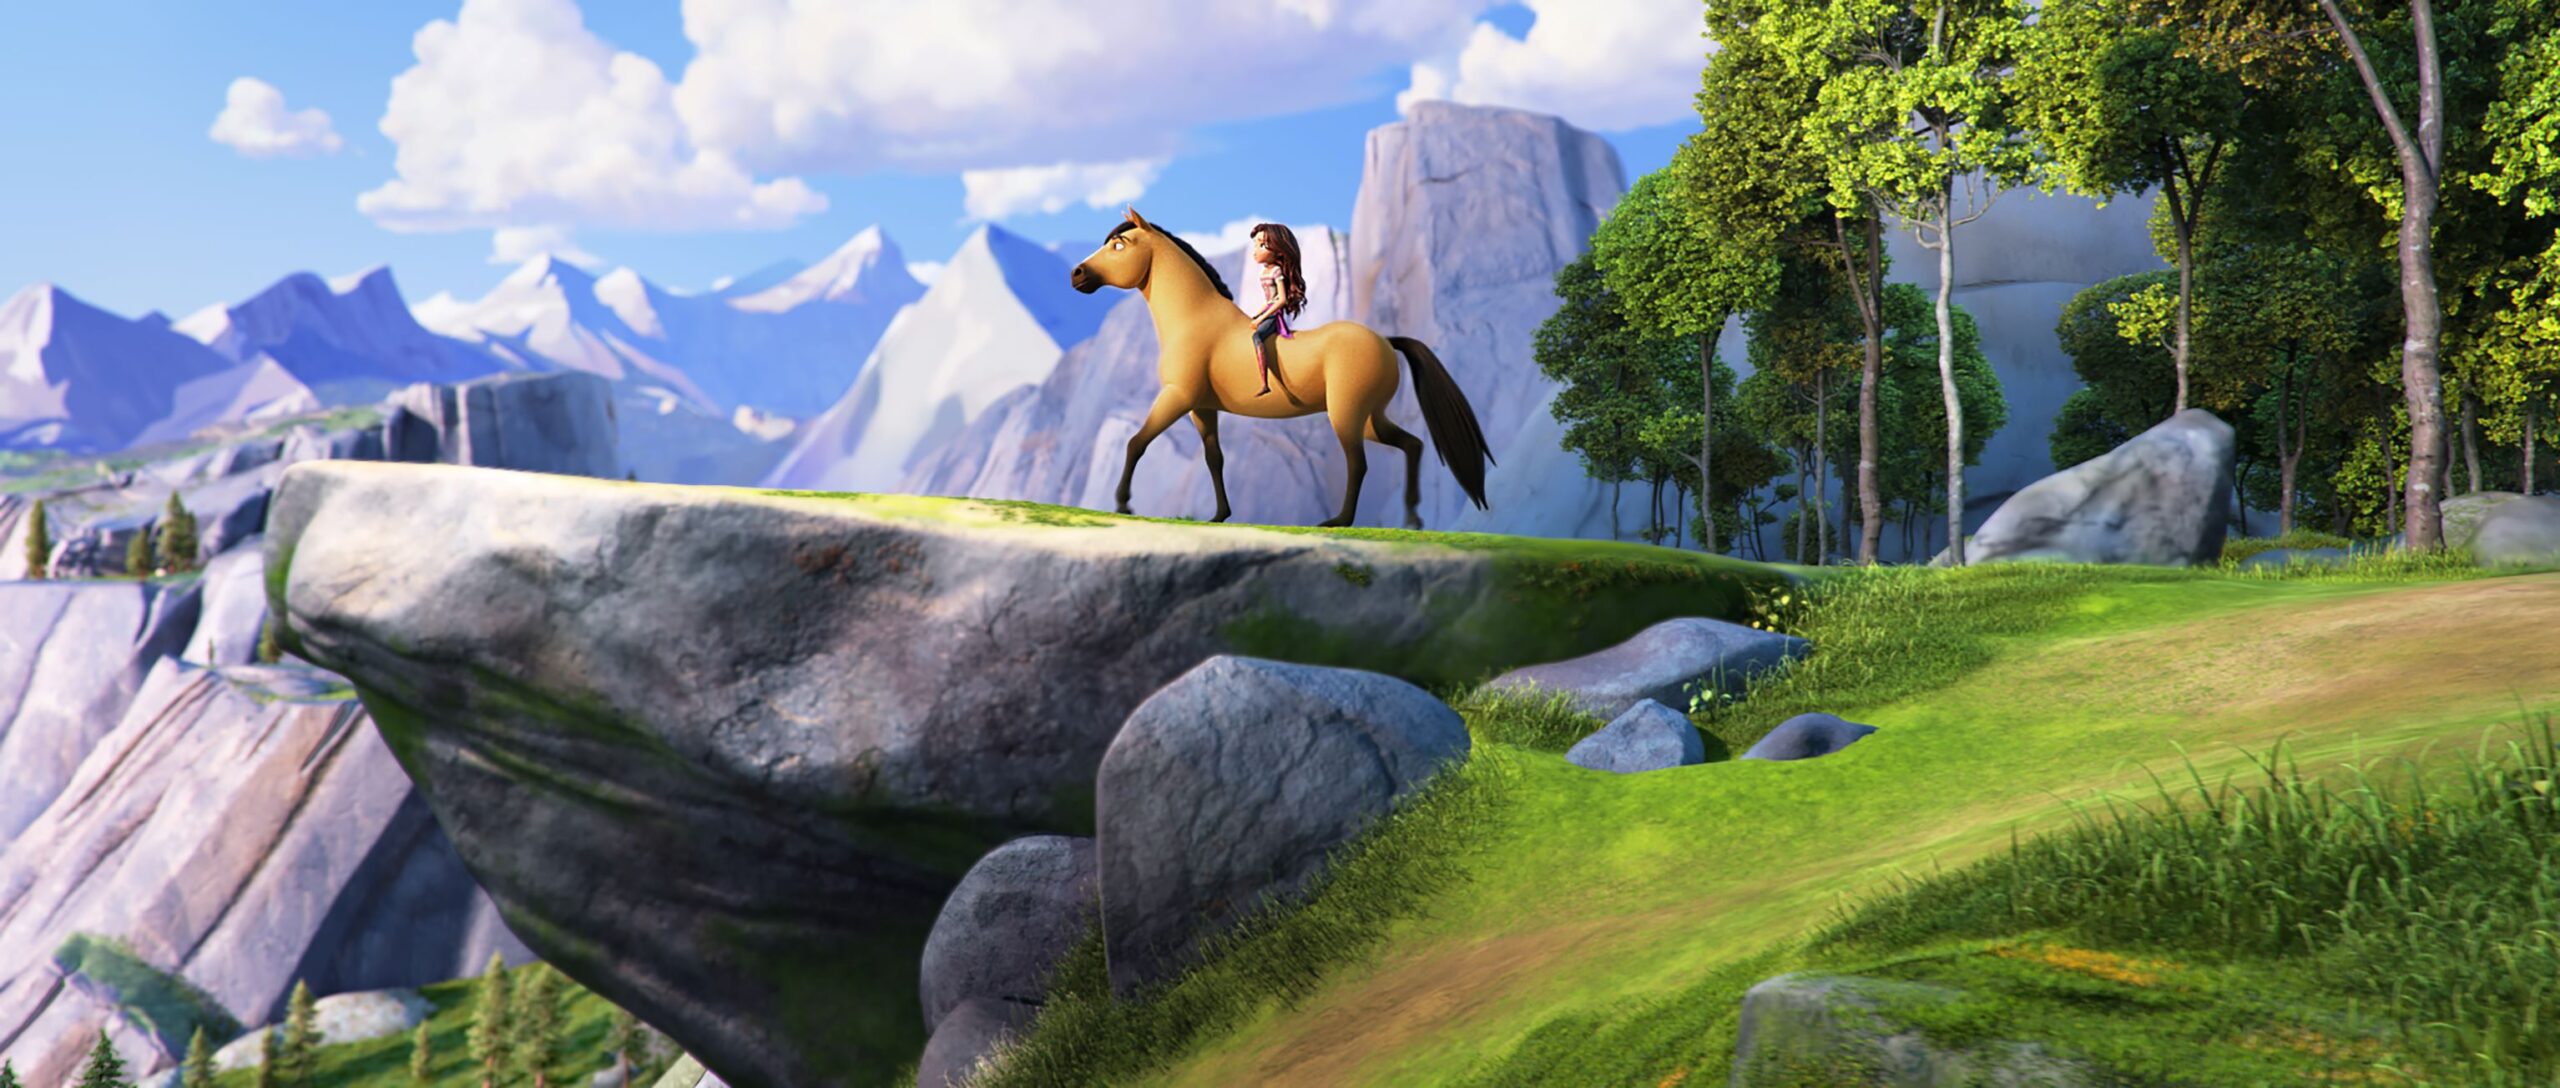 Lucky Prescott (Isabela Merced) riding Spirit in DreamWorks Animation’s Spi...